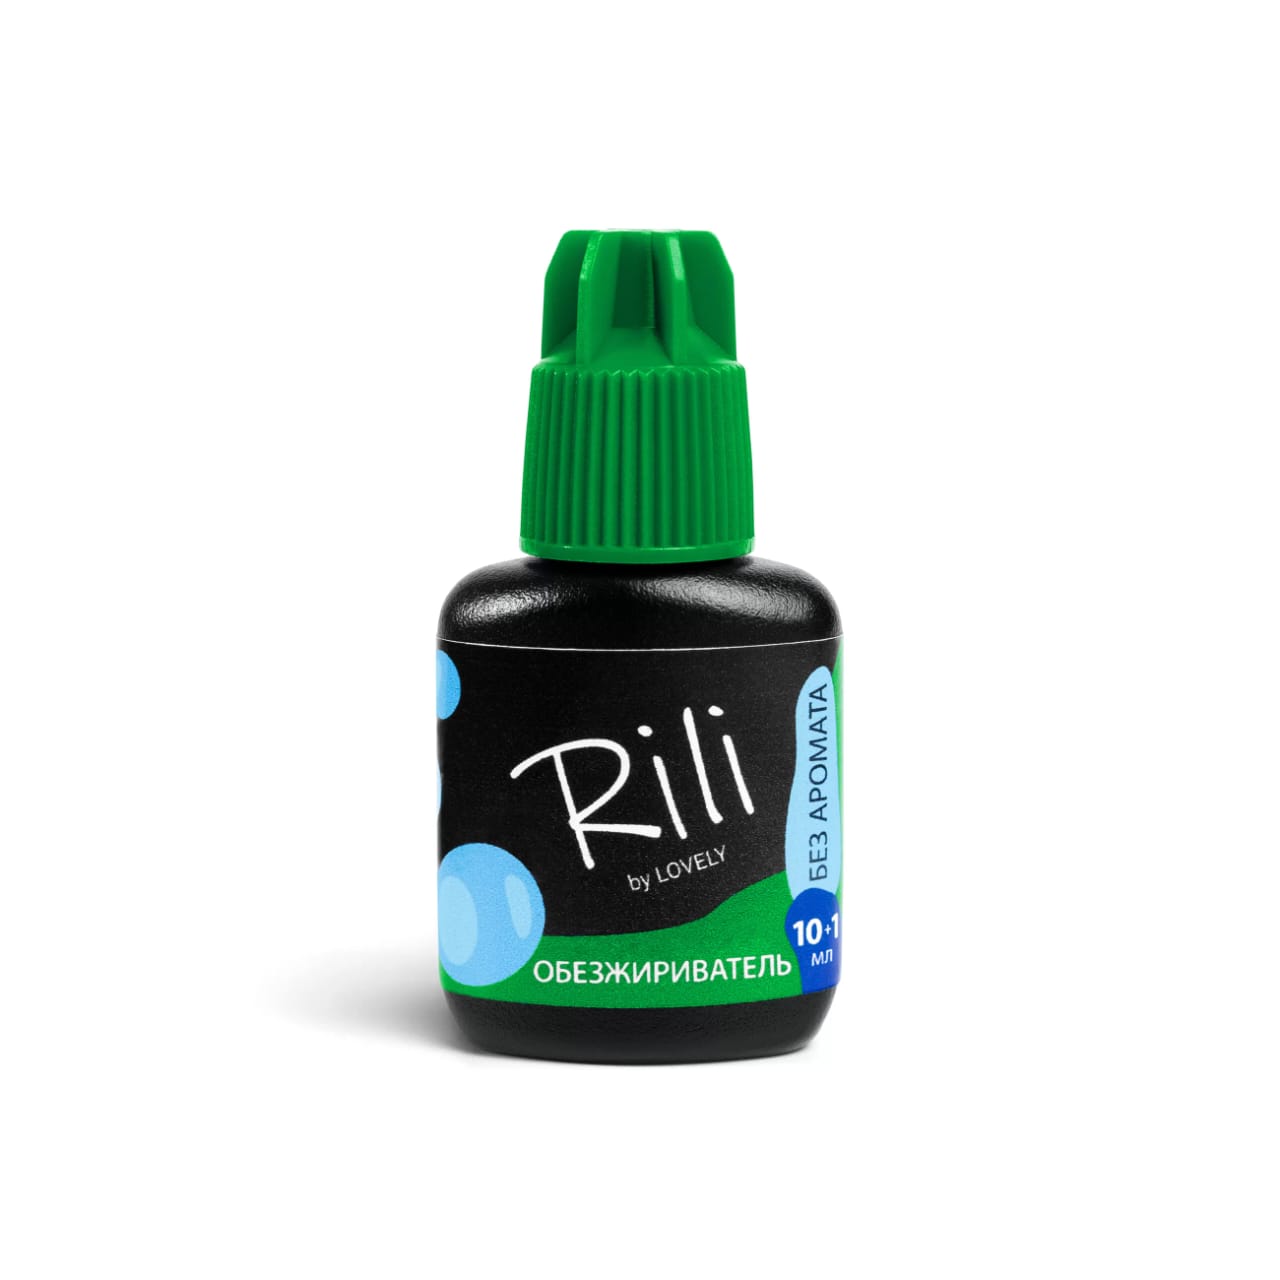 Обезжириватель Rili - Pre Treatment Rili